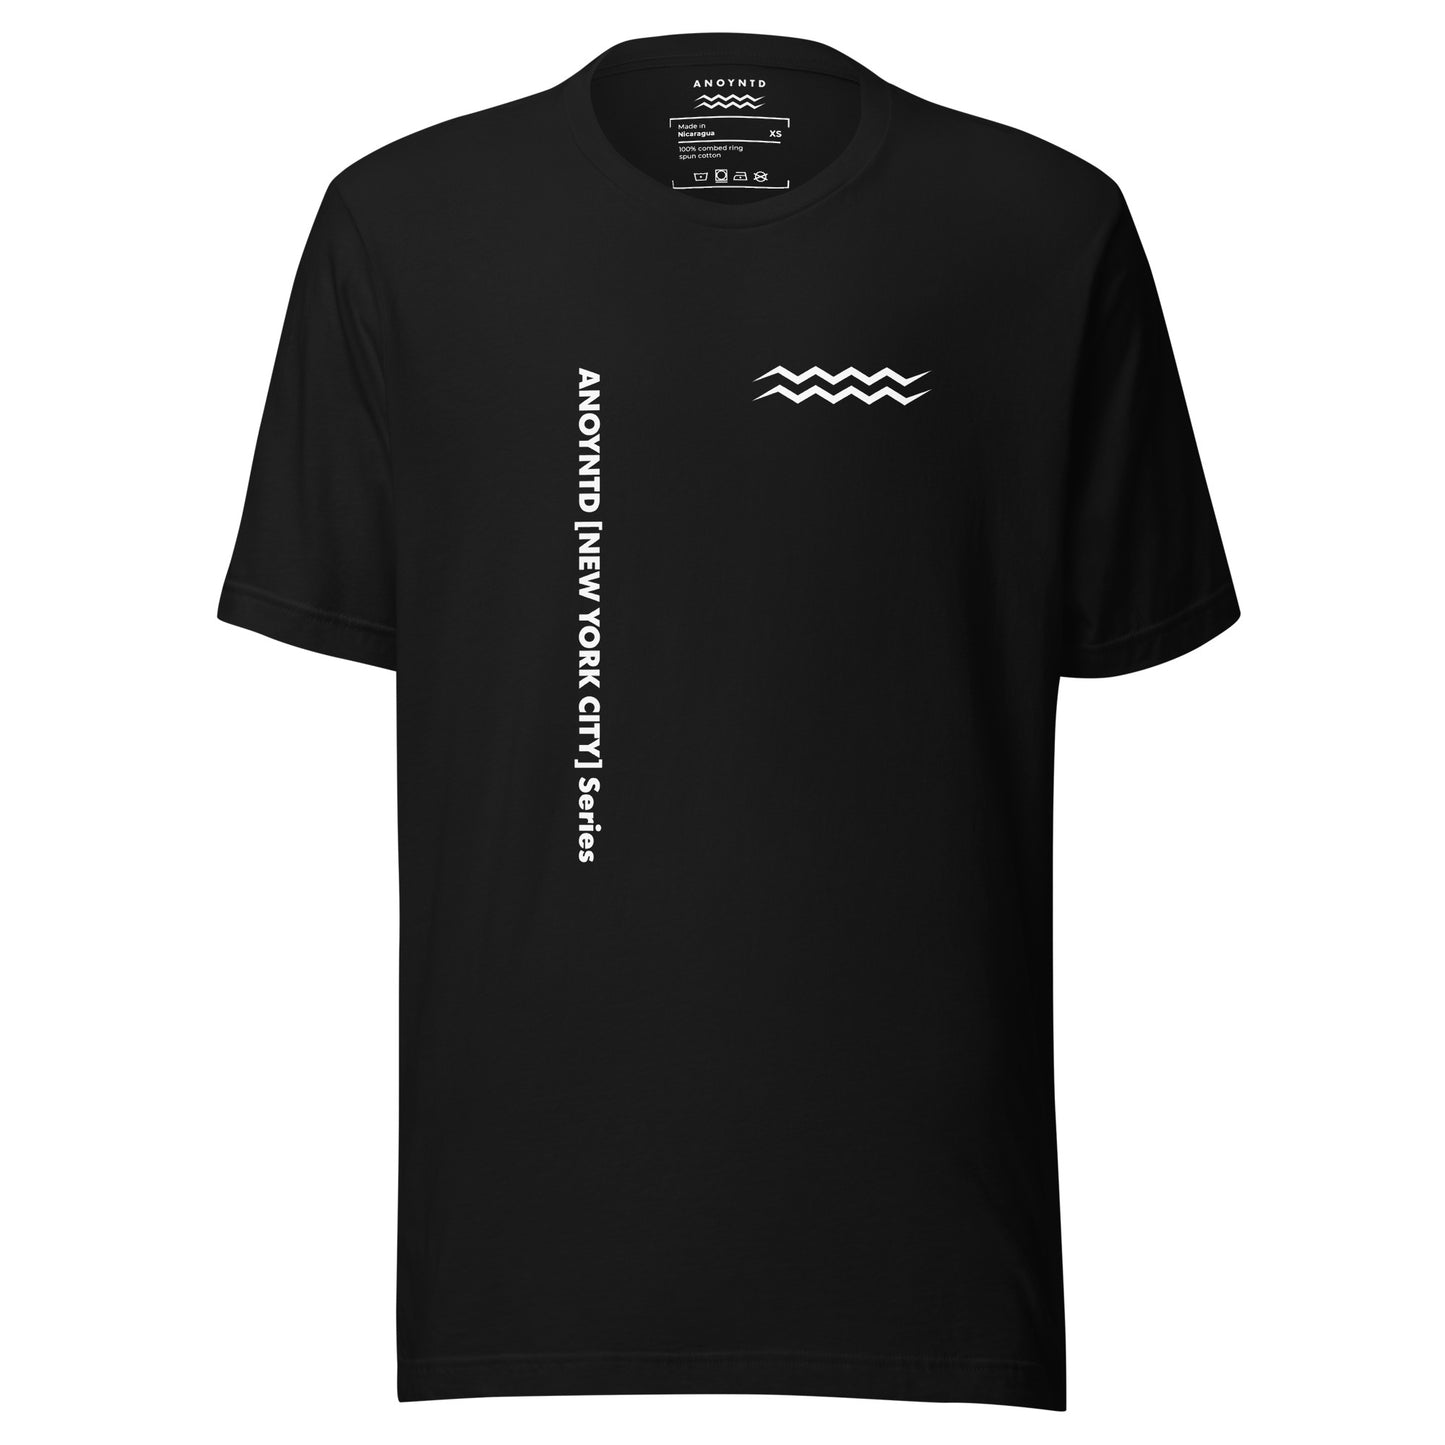 ANOYNTD [NYC] Series Unisex t-shirt